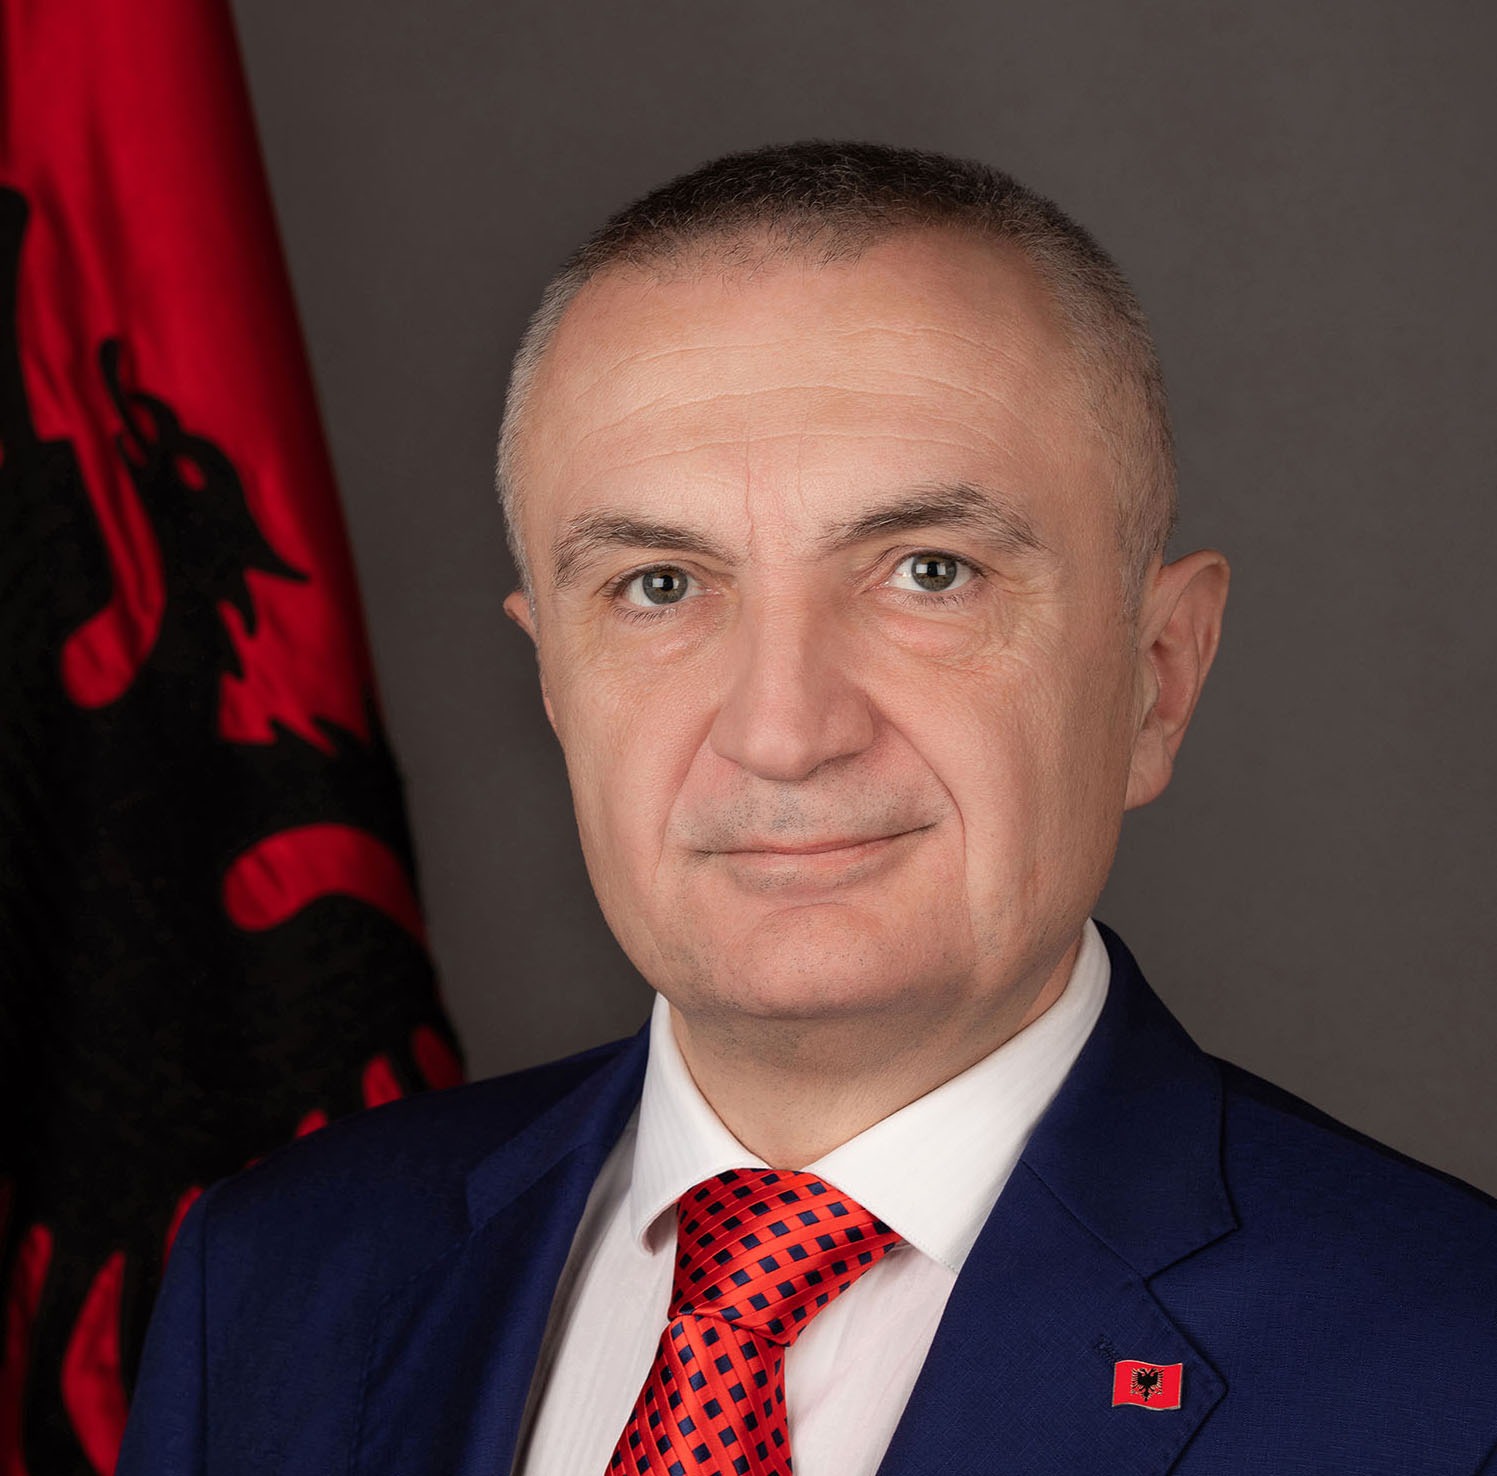 STATEMENT OF THE PRESIDENT OF THE REPUBLIC OF ALBANIA, H.E. ILIR META -  Presidenti i Republikës së Shqipërisë